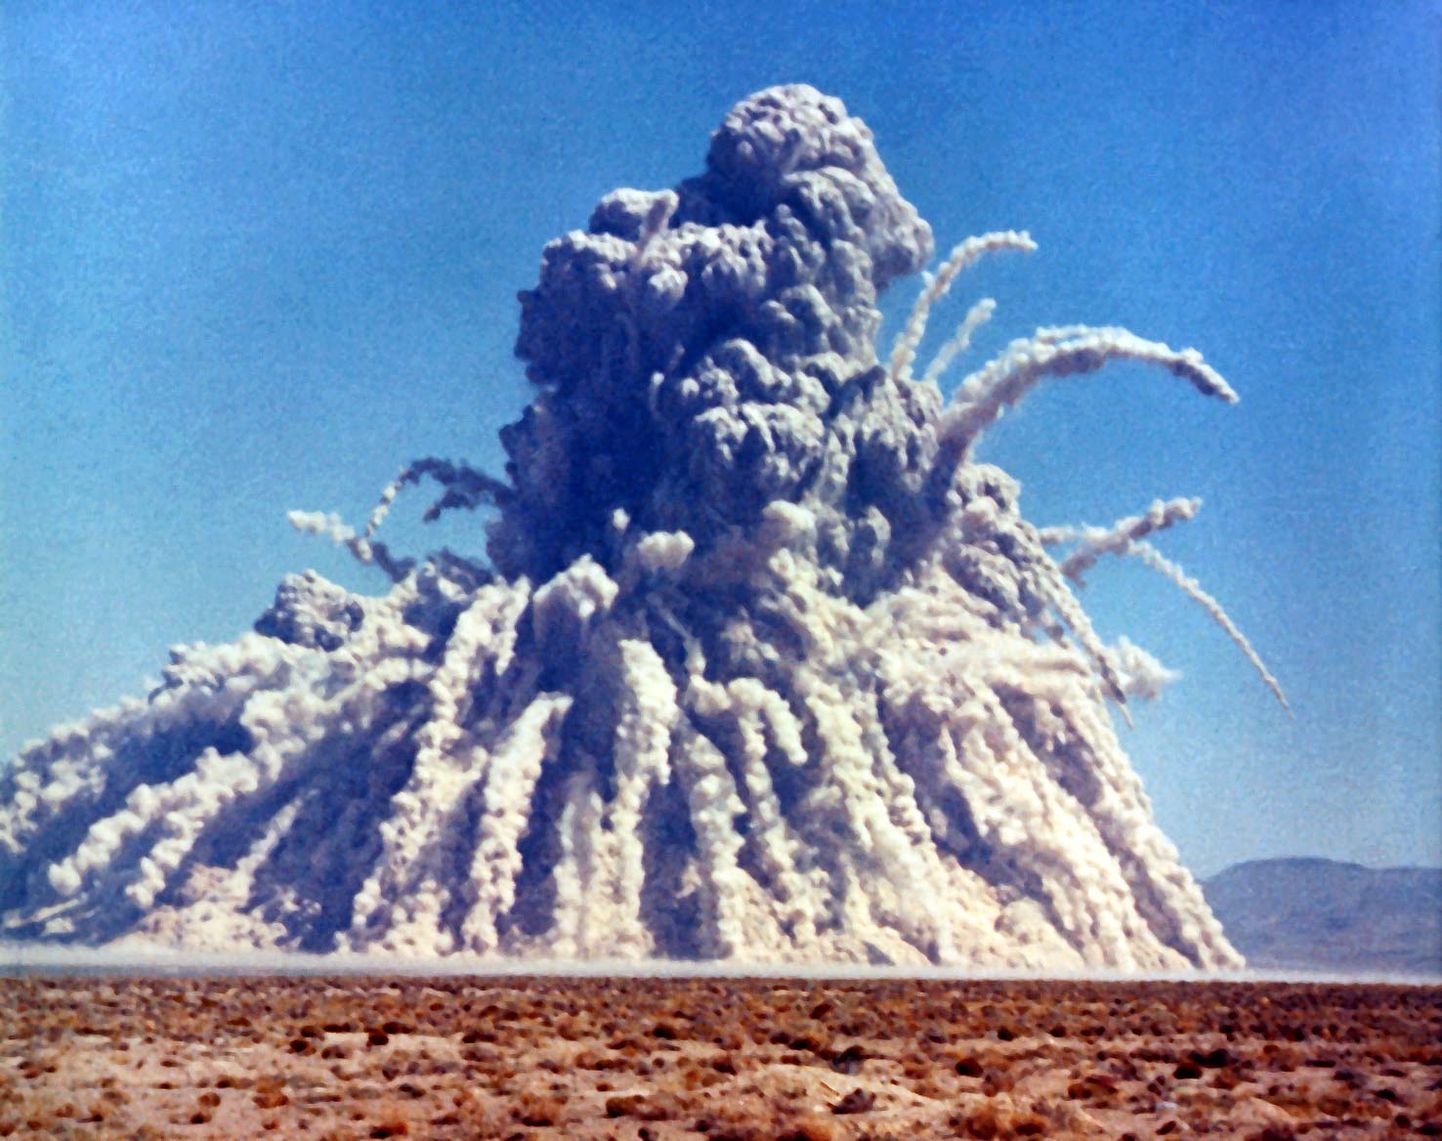 Storax Sedani maa-alune tuumakatsetus 6. juulil 1962 Nevada kõrbes. 104 kt lõhkejõuga seadme plahvatusega uuriti, kas tuumapomme saab kasutada ka mittesõjalisel eesmärgil – kaevanduste ja veehoidlate loomiseks.